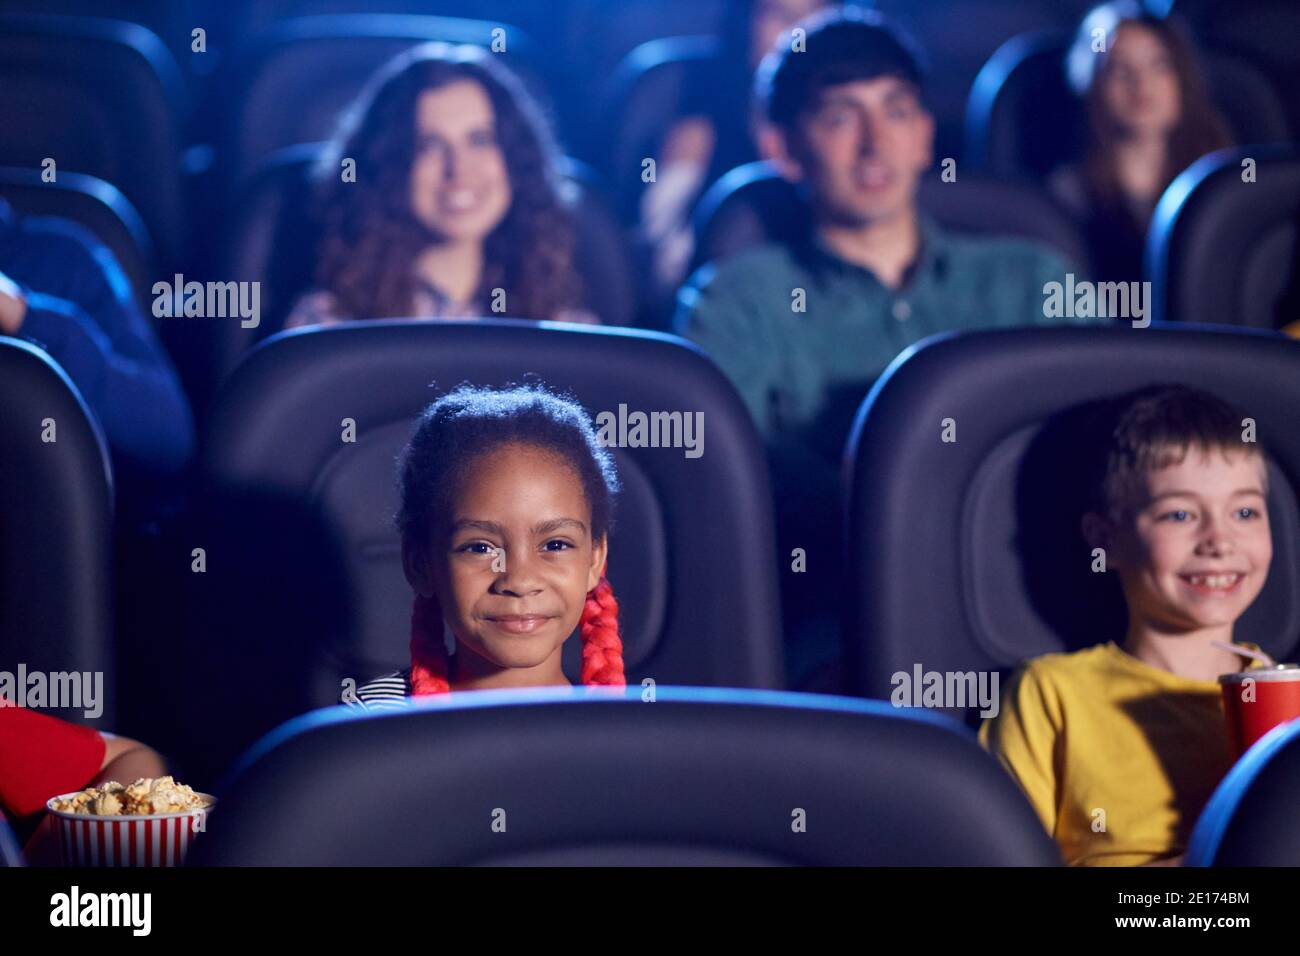 Vue de face des enfants multiraciaux en train de passer du temps ensemble, un public jeune en arrière-plan. Foyer sélectif de la petite fille africaine heureuse assise dans le cinéma, regardant le dessin animé drôle. Concept de divertissement. Banque D'Images